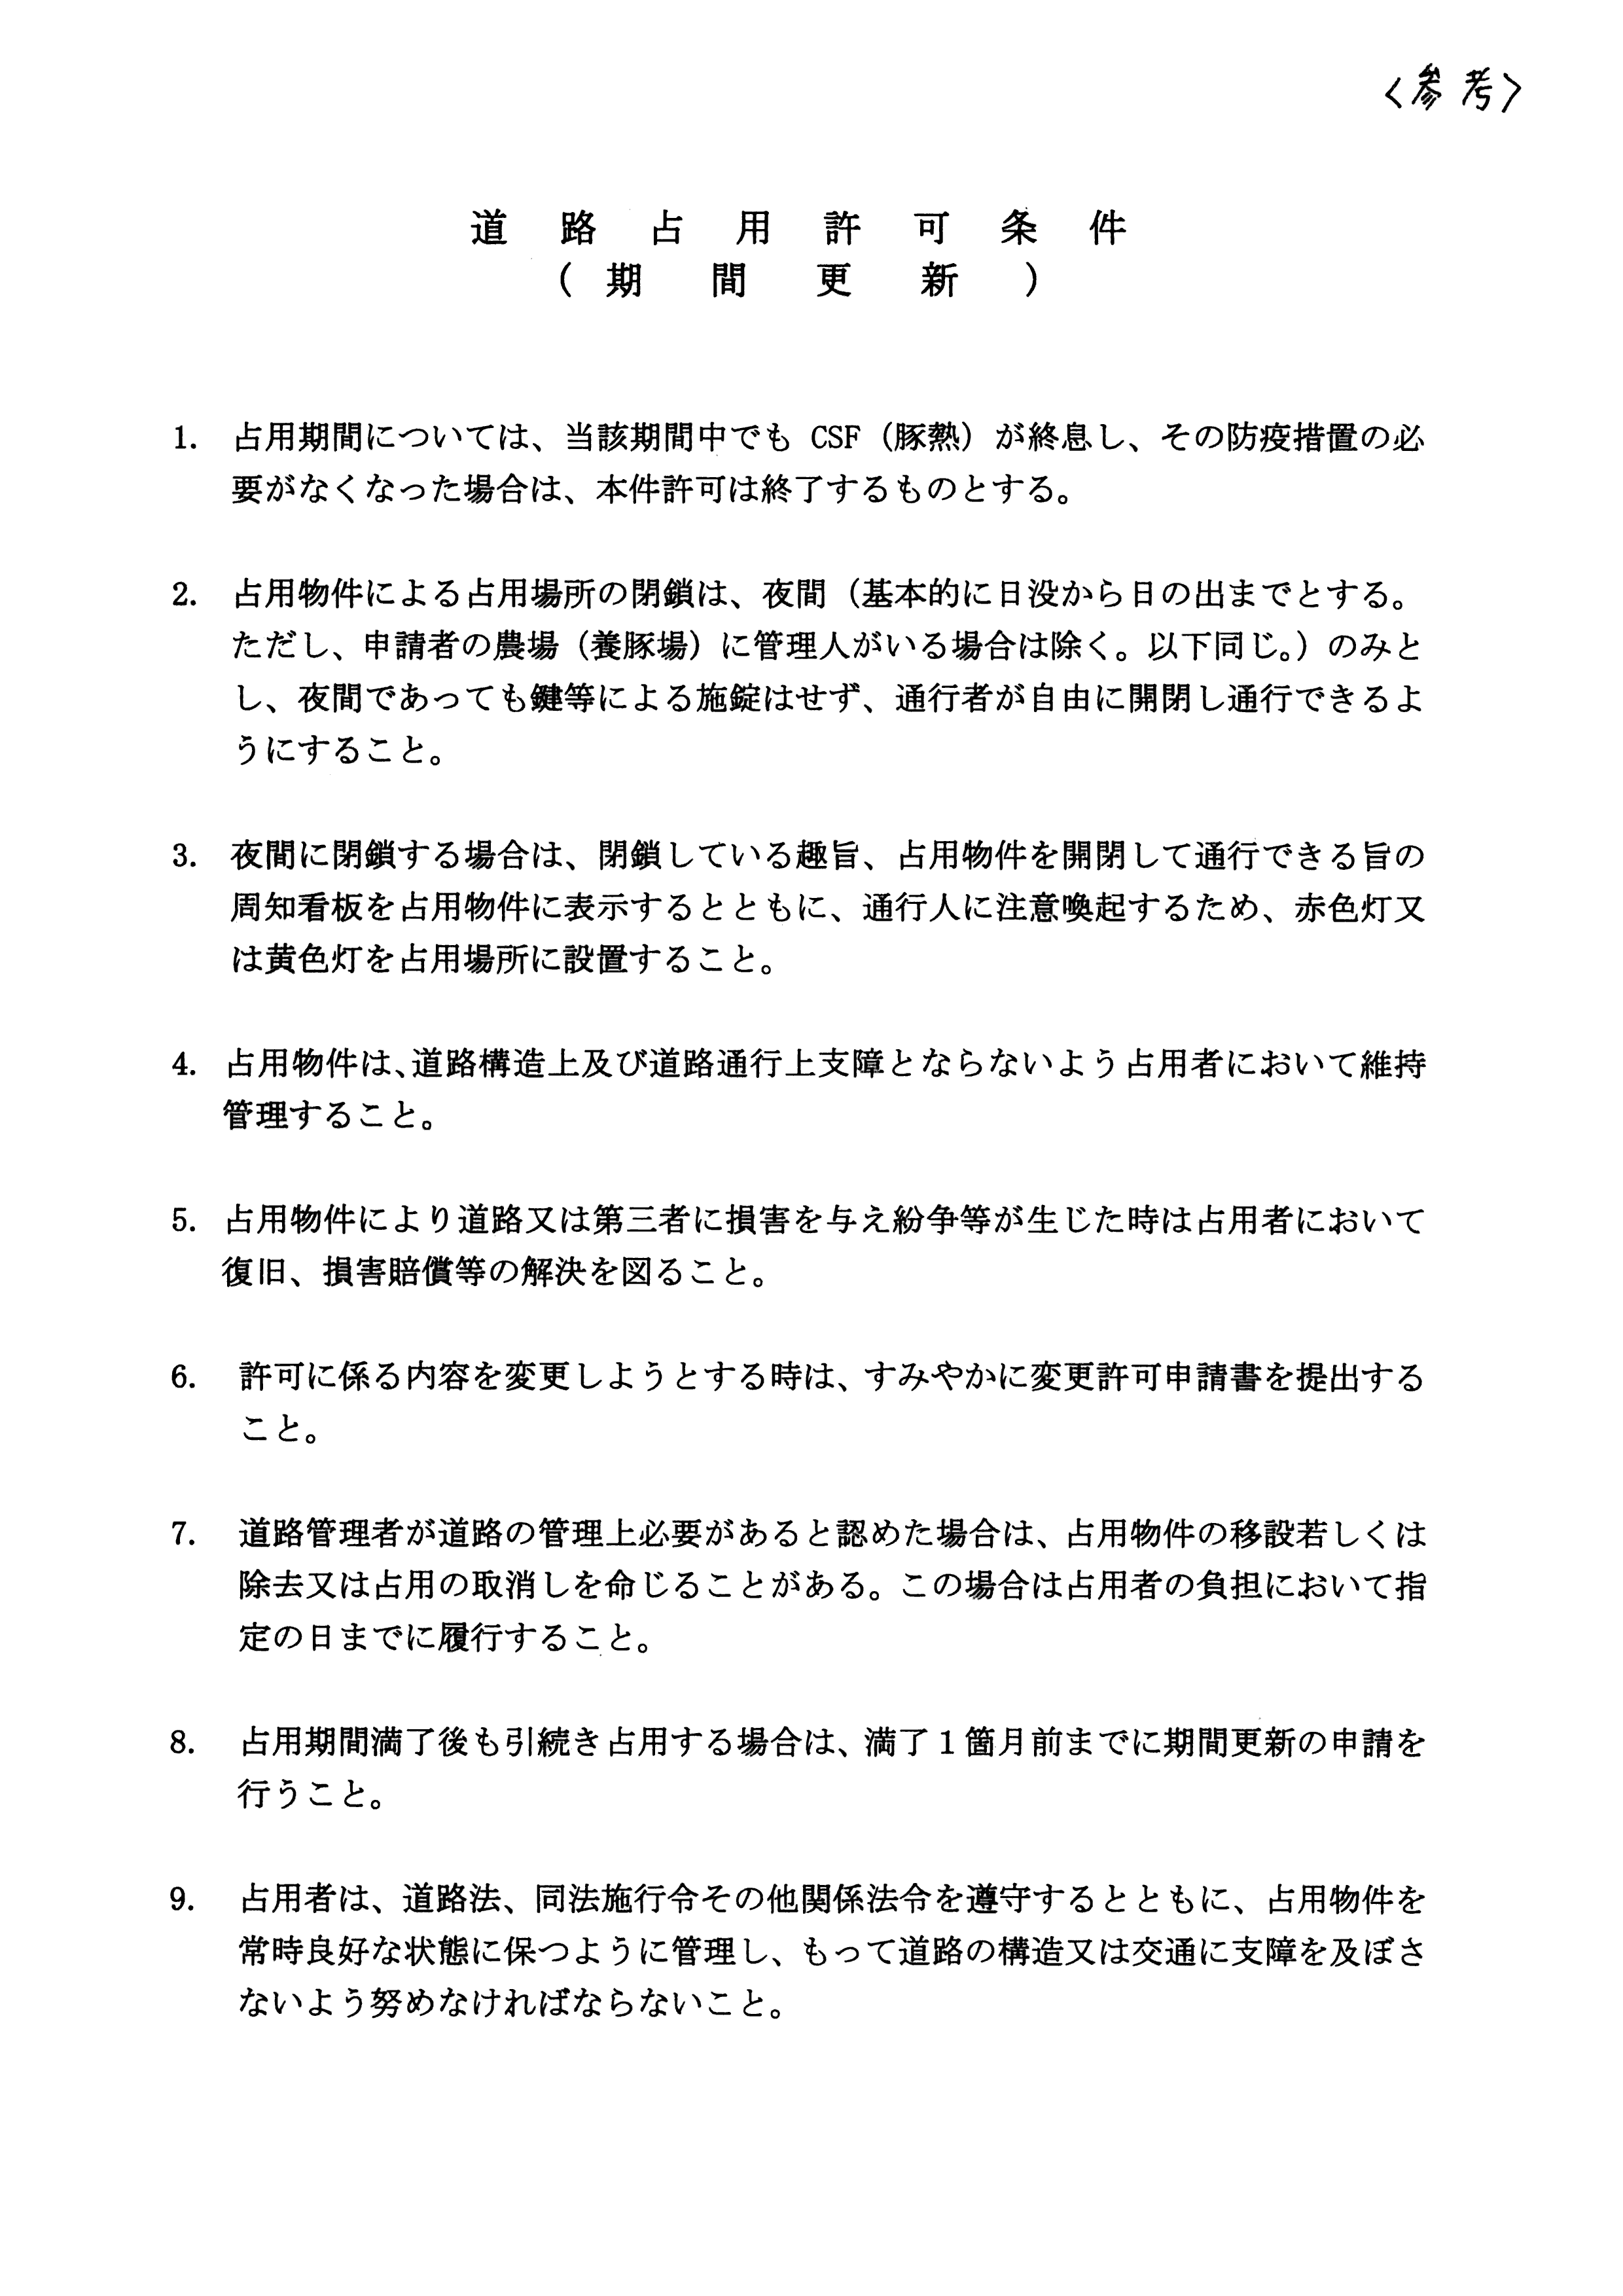 令和6(2024)年3月6日-(株)村田商店による道路使用及び道路占用許可に関する協議-09